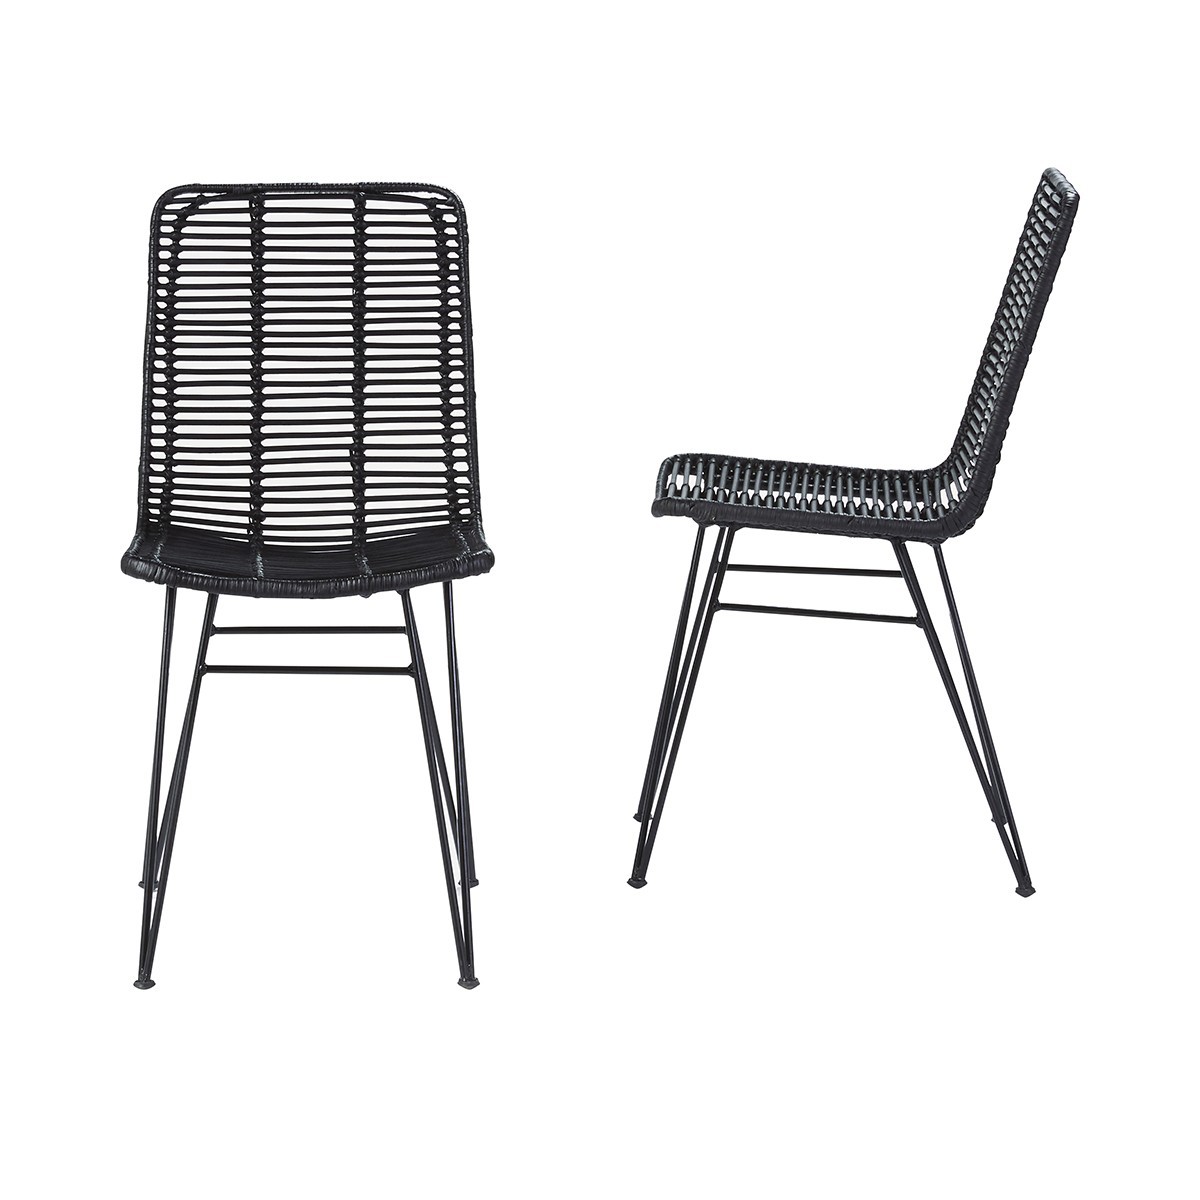 2 chaises en rotin et métal noires